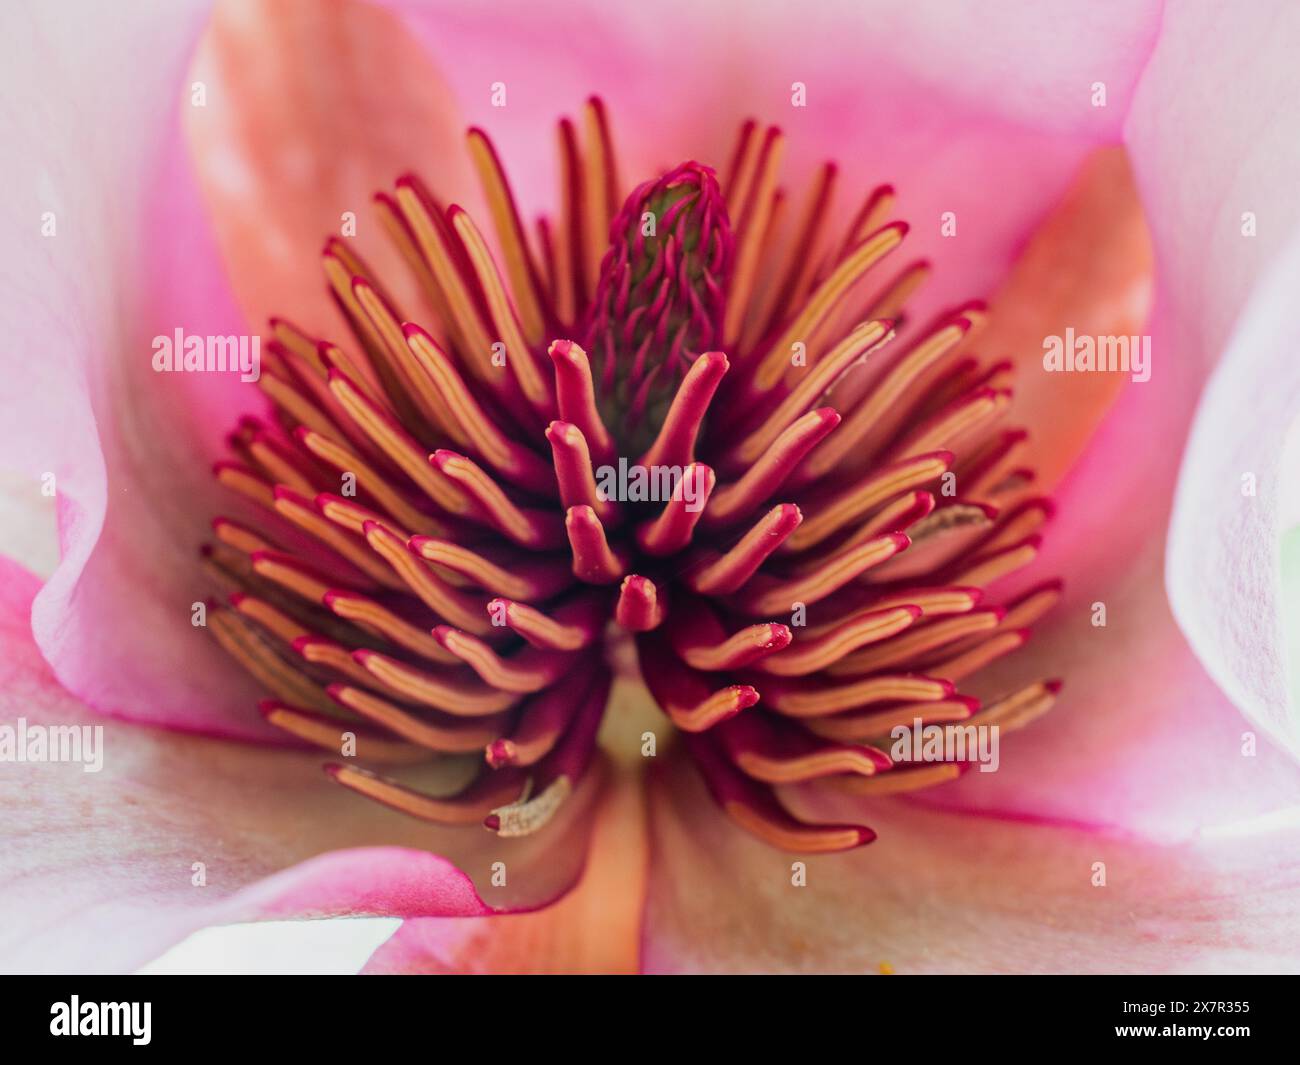 Una macro fotografia che cattura gli intricati dettagli della statura e della pistola di un fiore di magnolia, evidenziando la bellezza naturale e la complessità della pianta Foto Stock